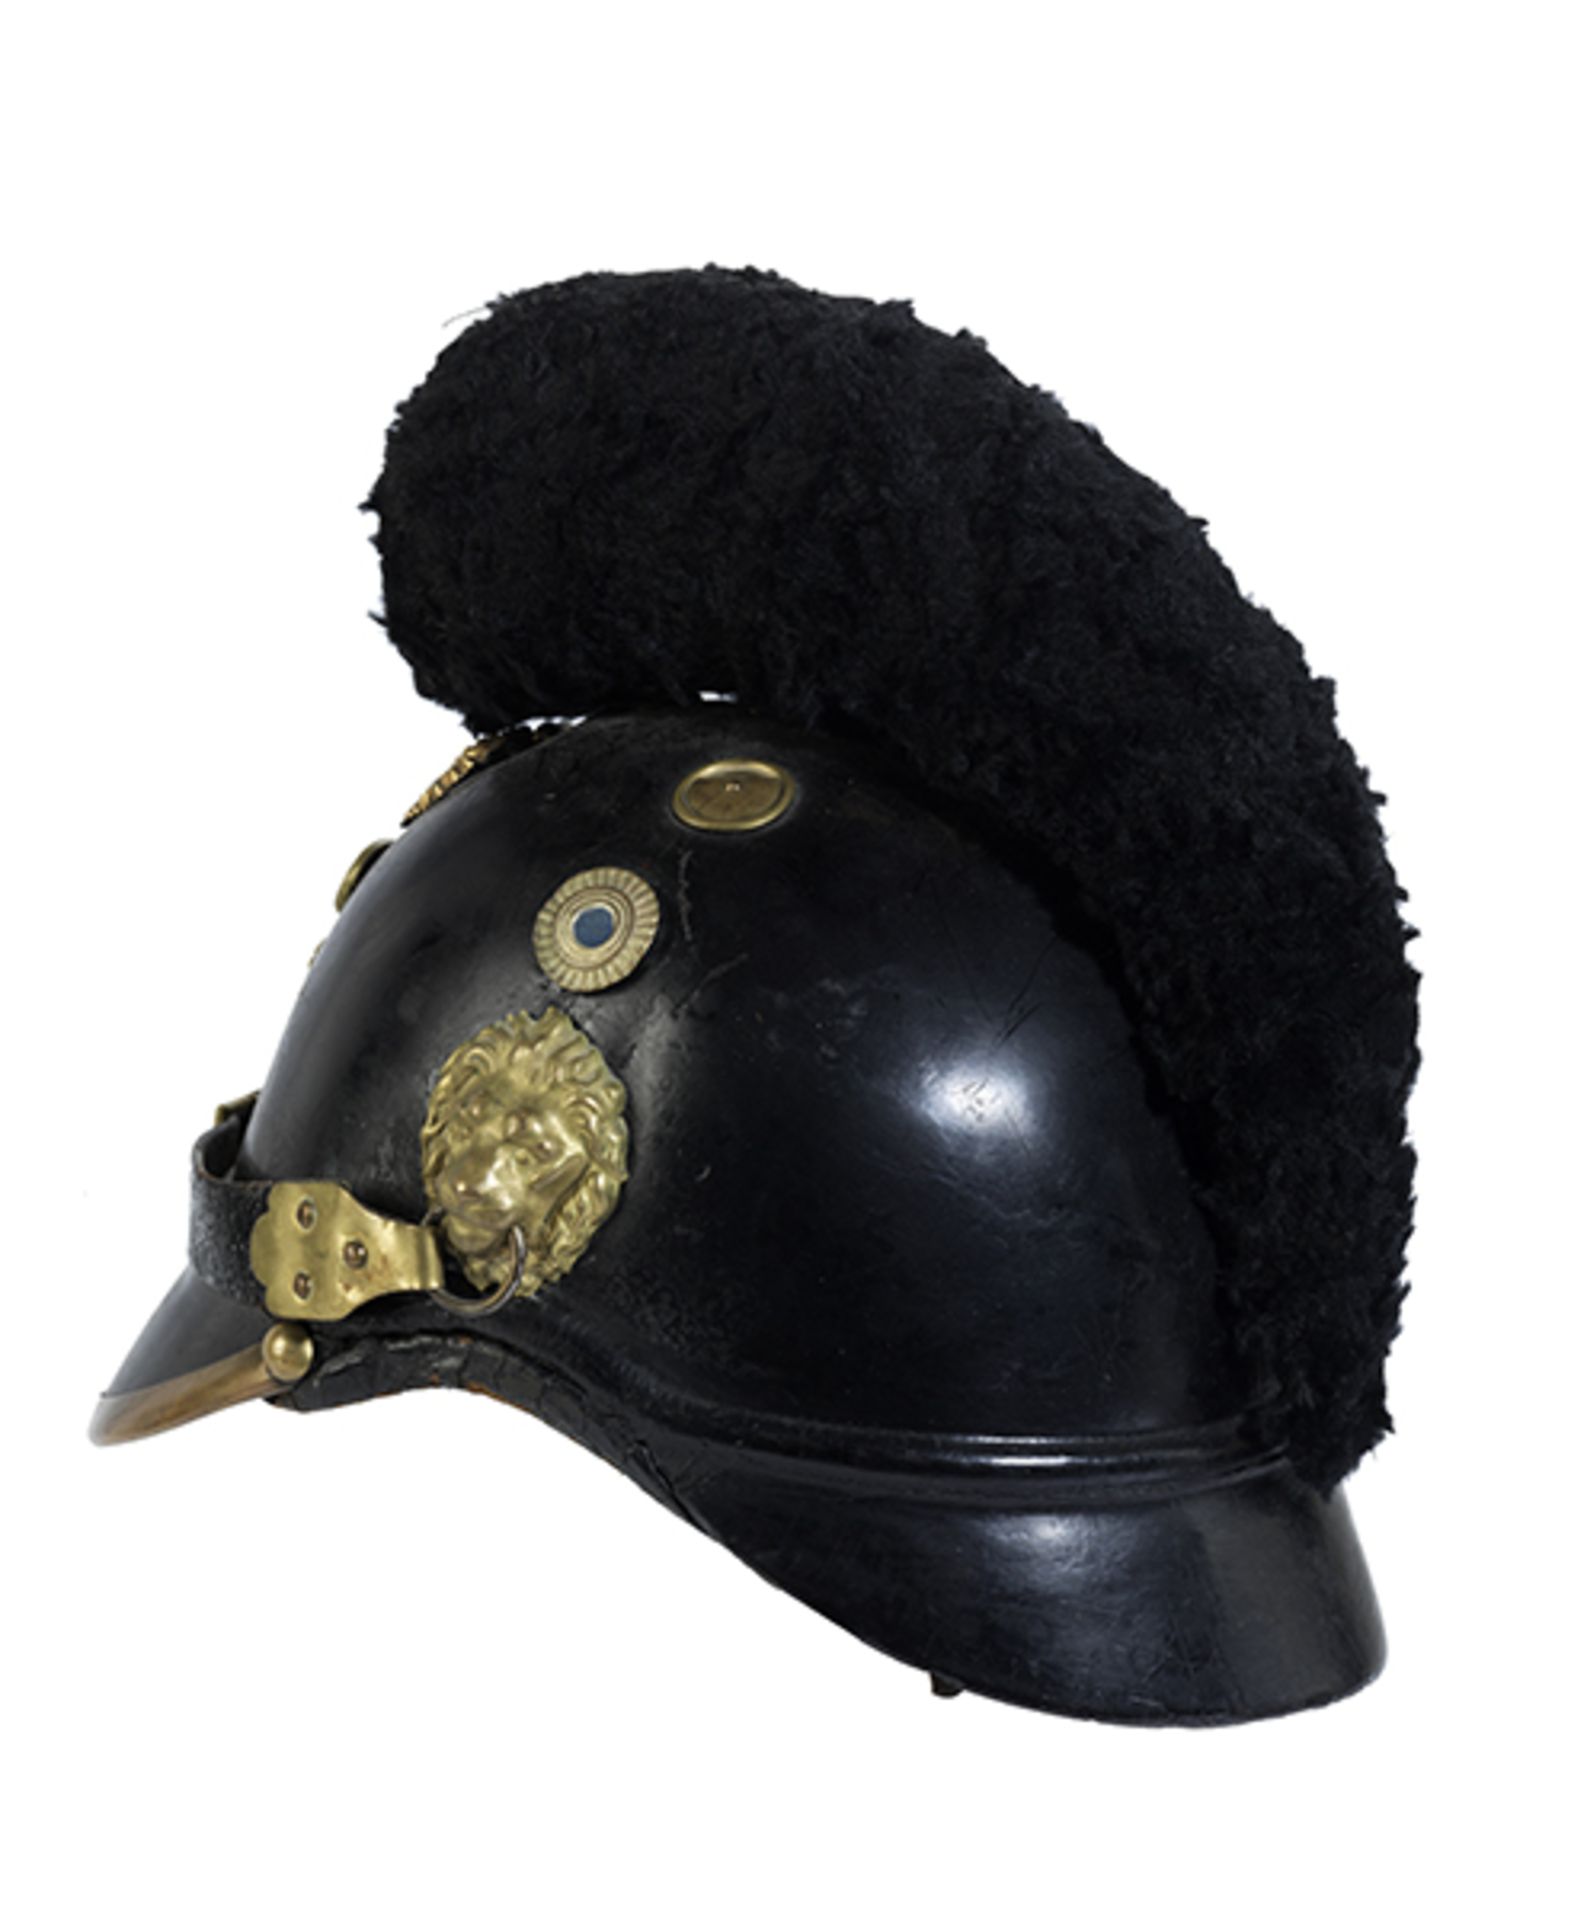 Bayerischer Helm Bayern, 19. Jahrhundert. Gepresstes und lackiertes Leder, Lederband. Seitliche - Bild 2 aus 3